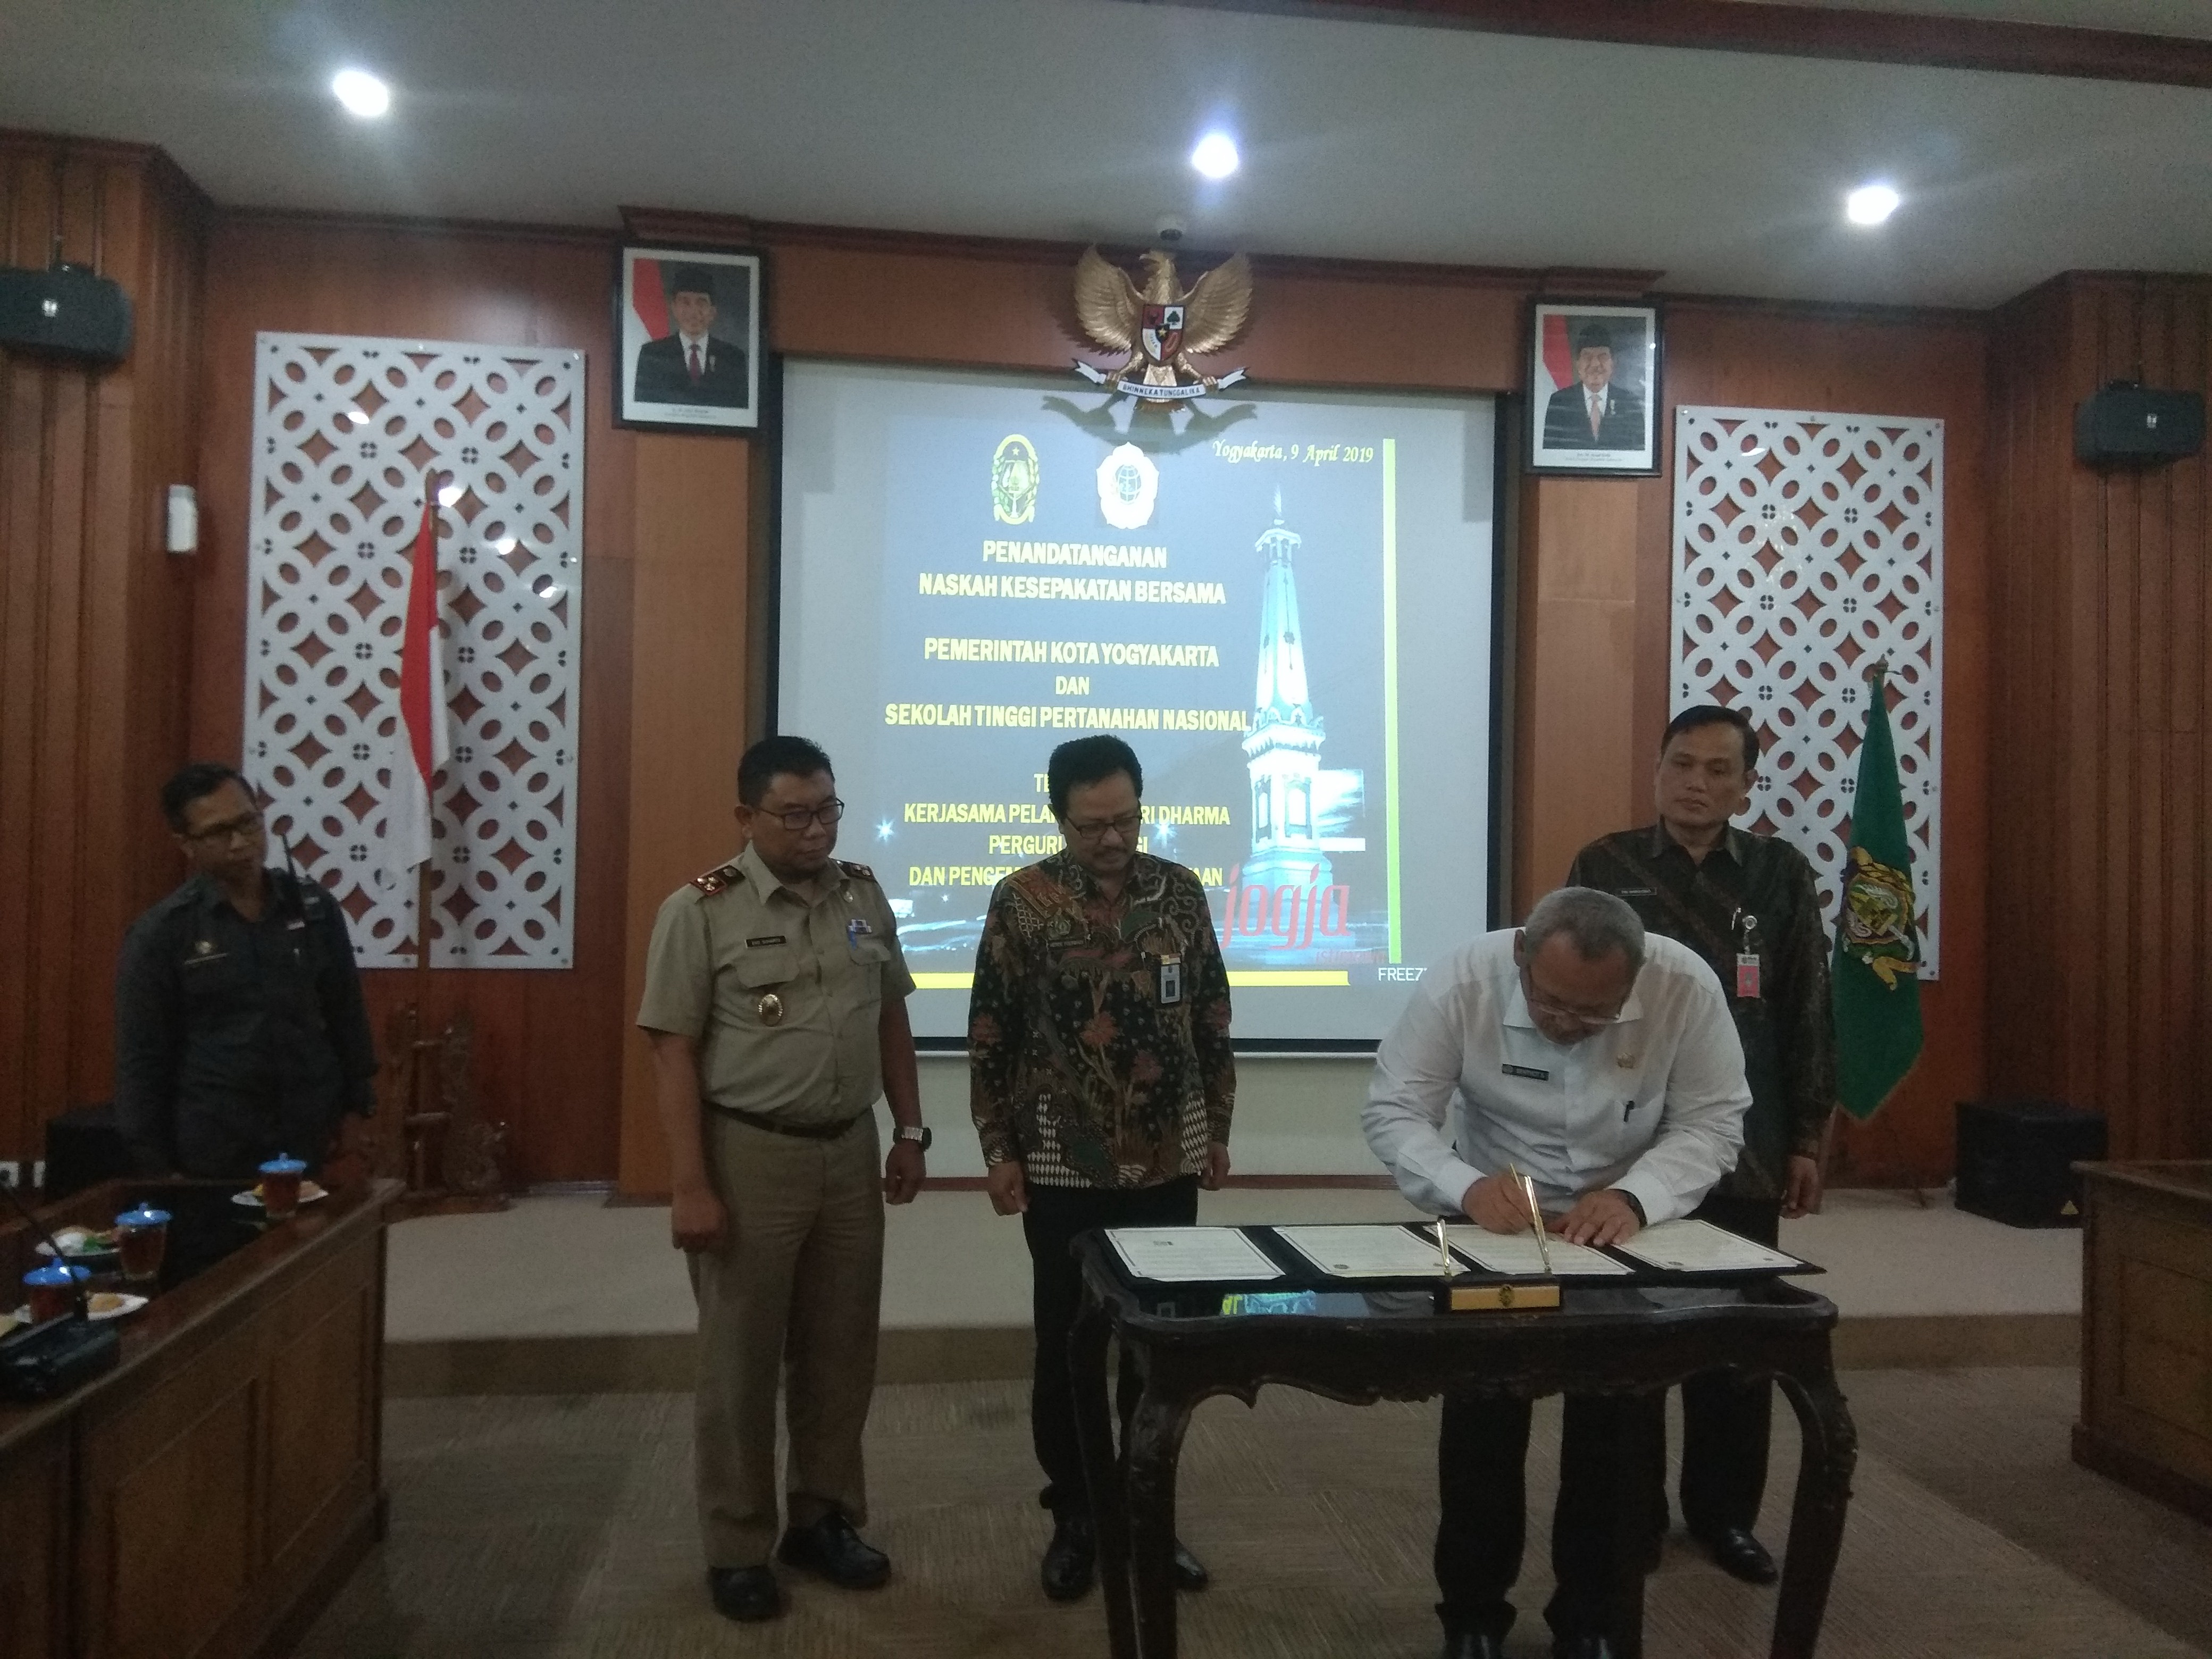 Kesepakatan Bersama Pemerintah Kota Yogyakarta dengan Sekolah Tinggi Pertanahan Nasional